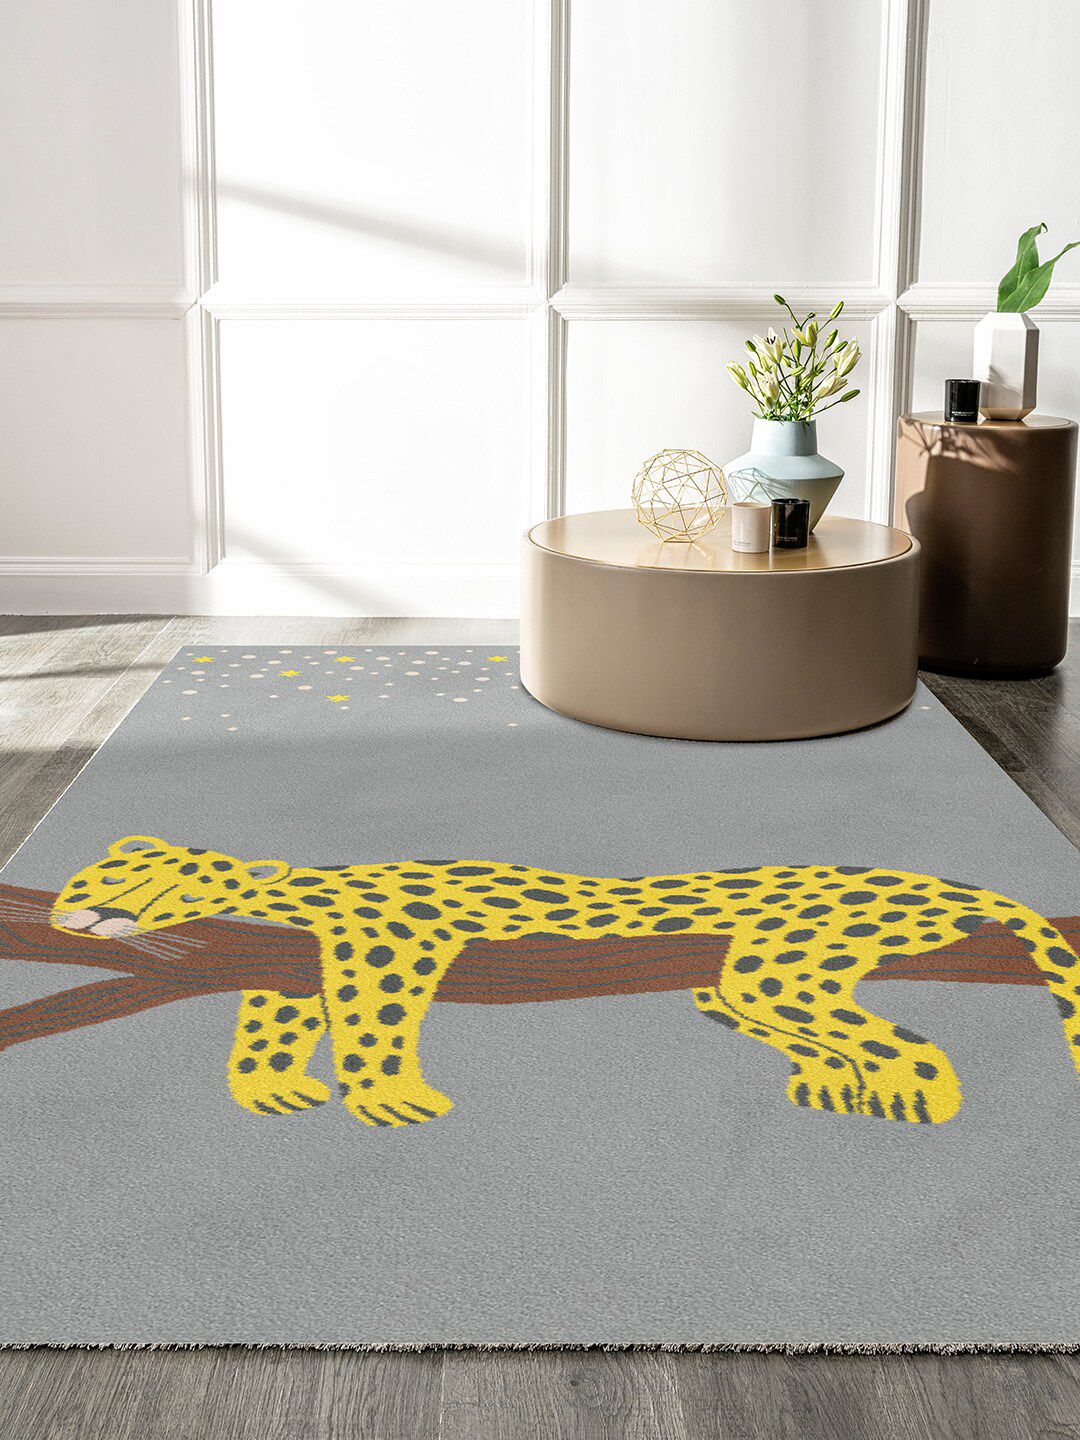 DDecor Grey Printed Carpet Price in India